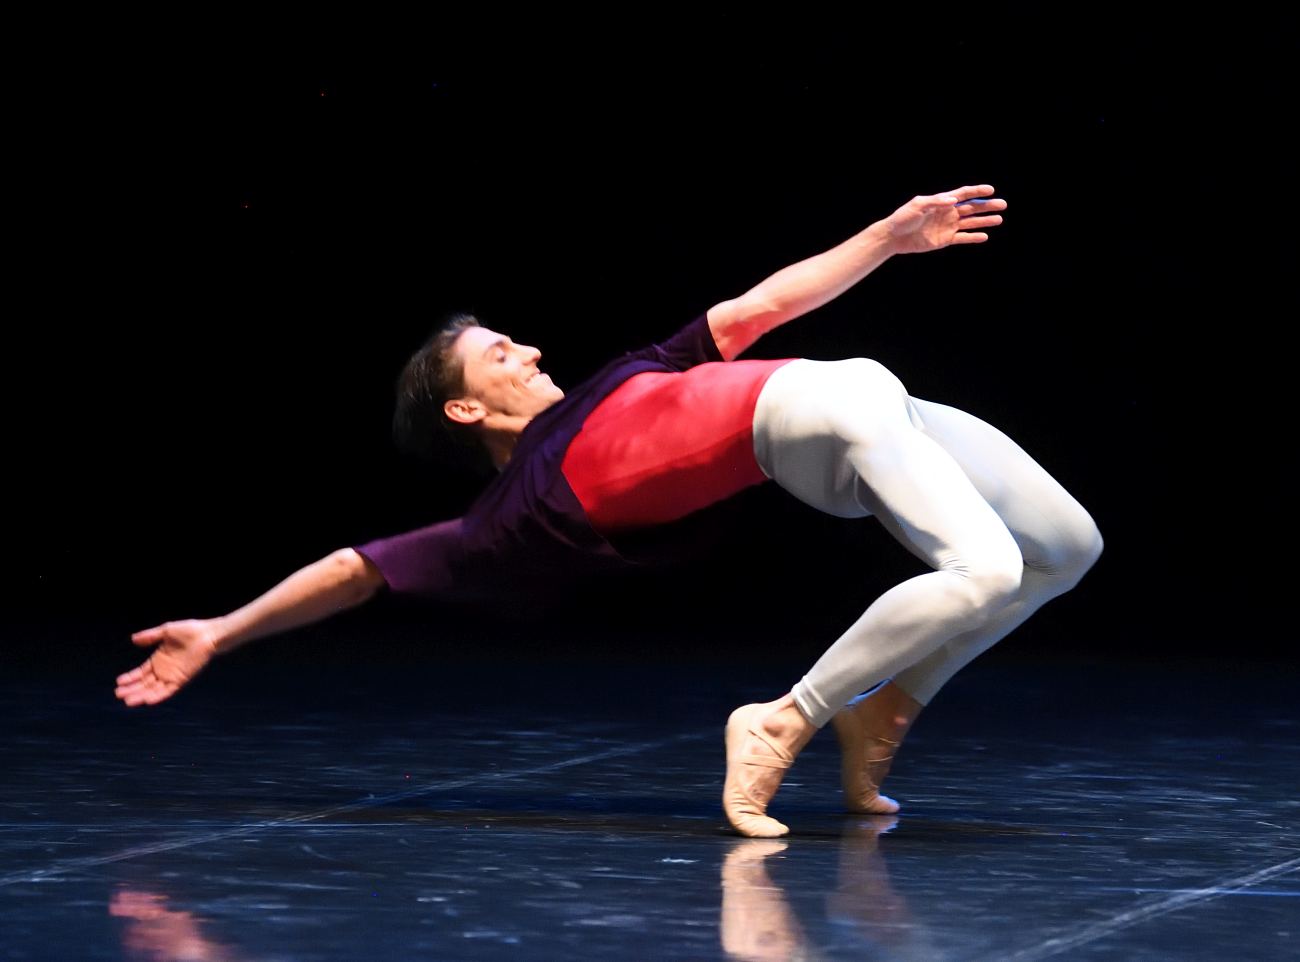 12. M.Miccini, “Solo” by H.v.Manen, Stuttgart Ballet 2020 © Stuttgart Ballet